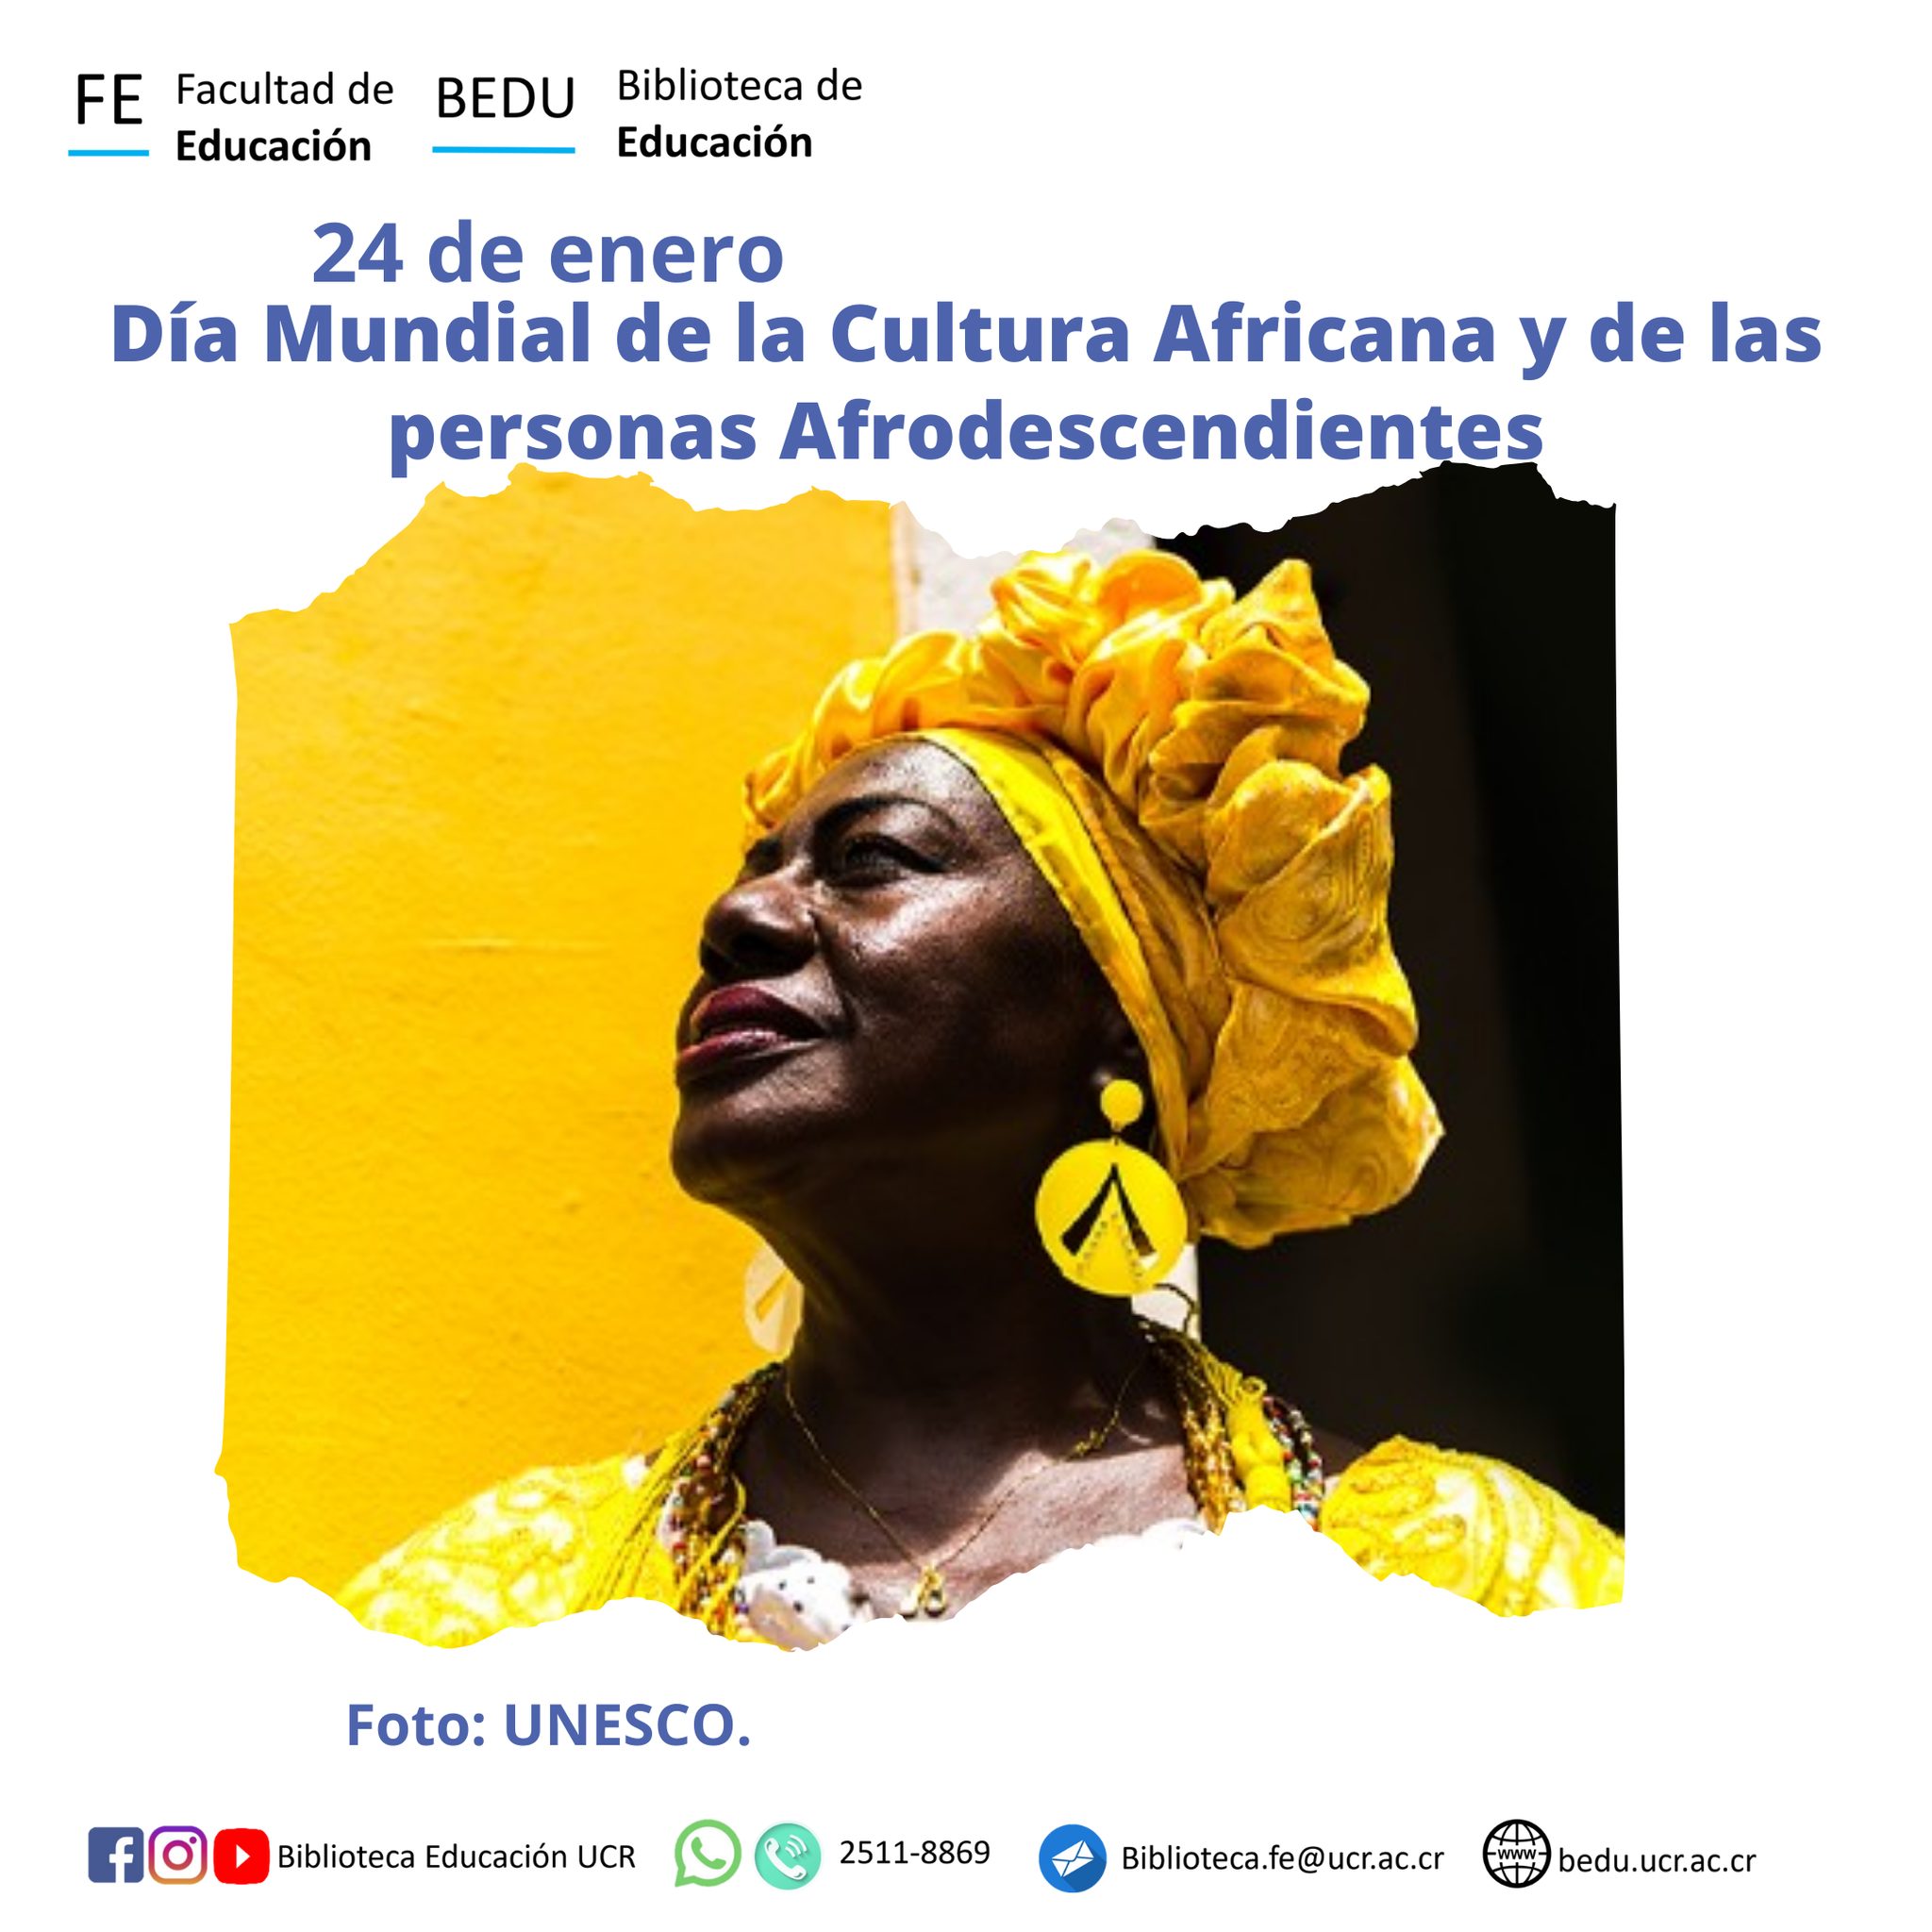 Dia mundial de la cultura Africana y de las personas Afrodescendientes 